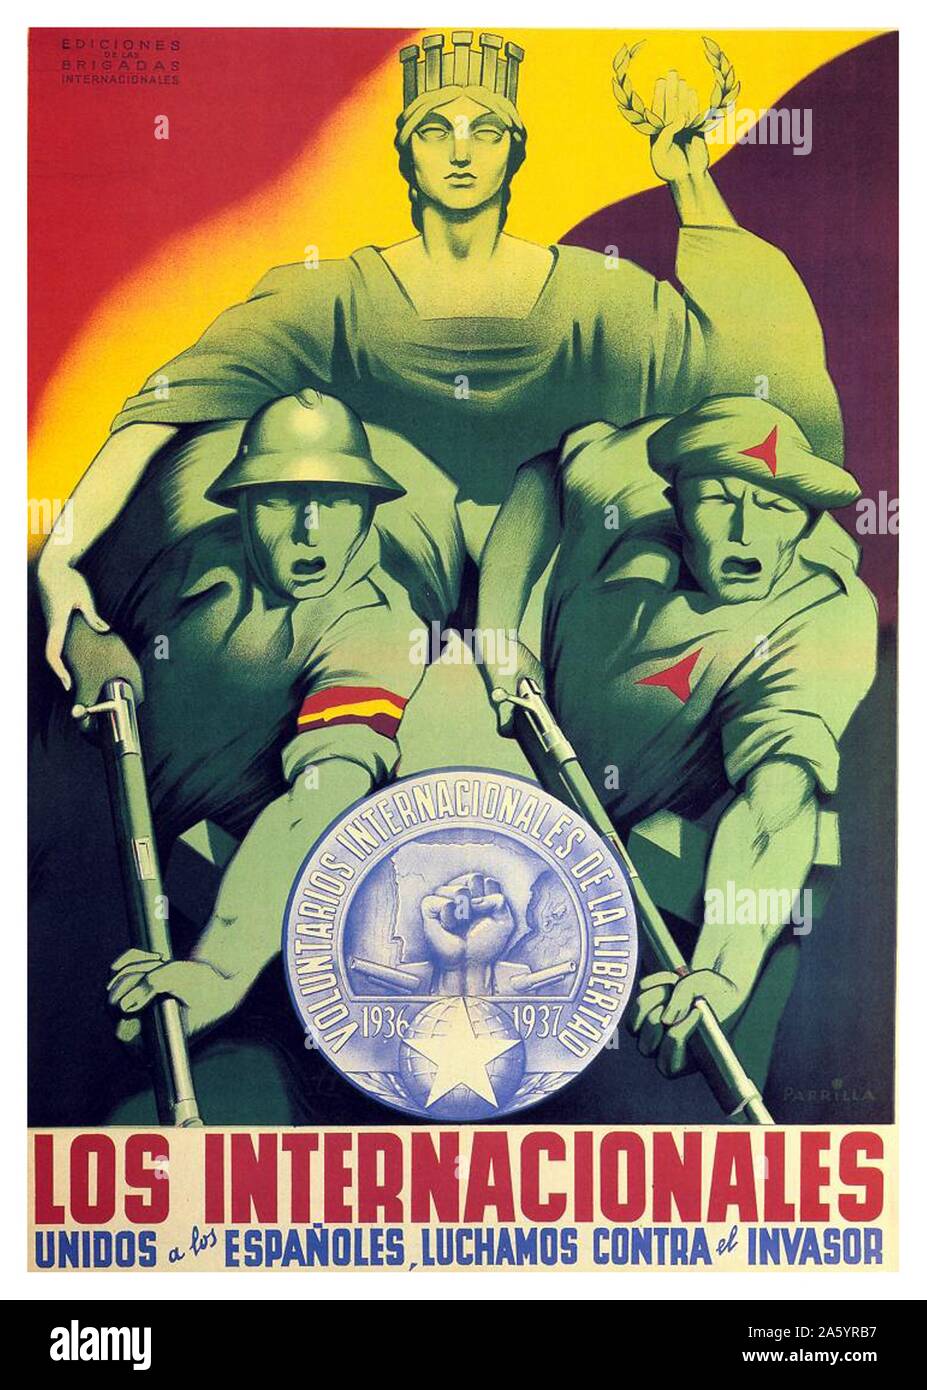 Le Brigate internazionali / Los Internacionales. Le Brigate internazionali uniti con la spagnola, contro la invador. Foto Stock